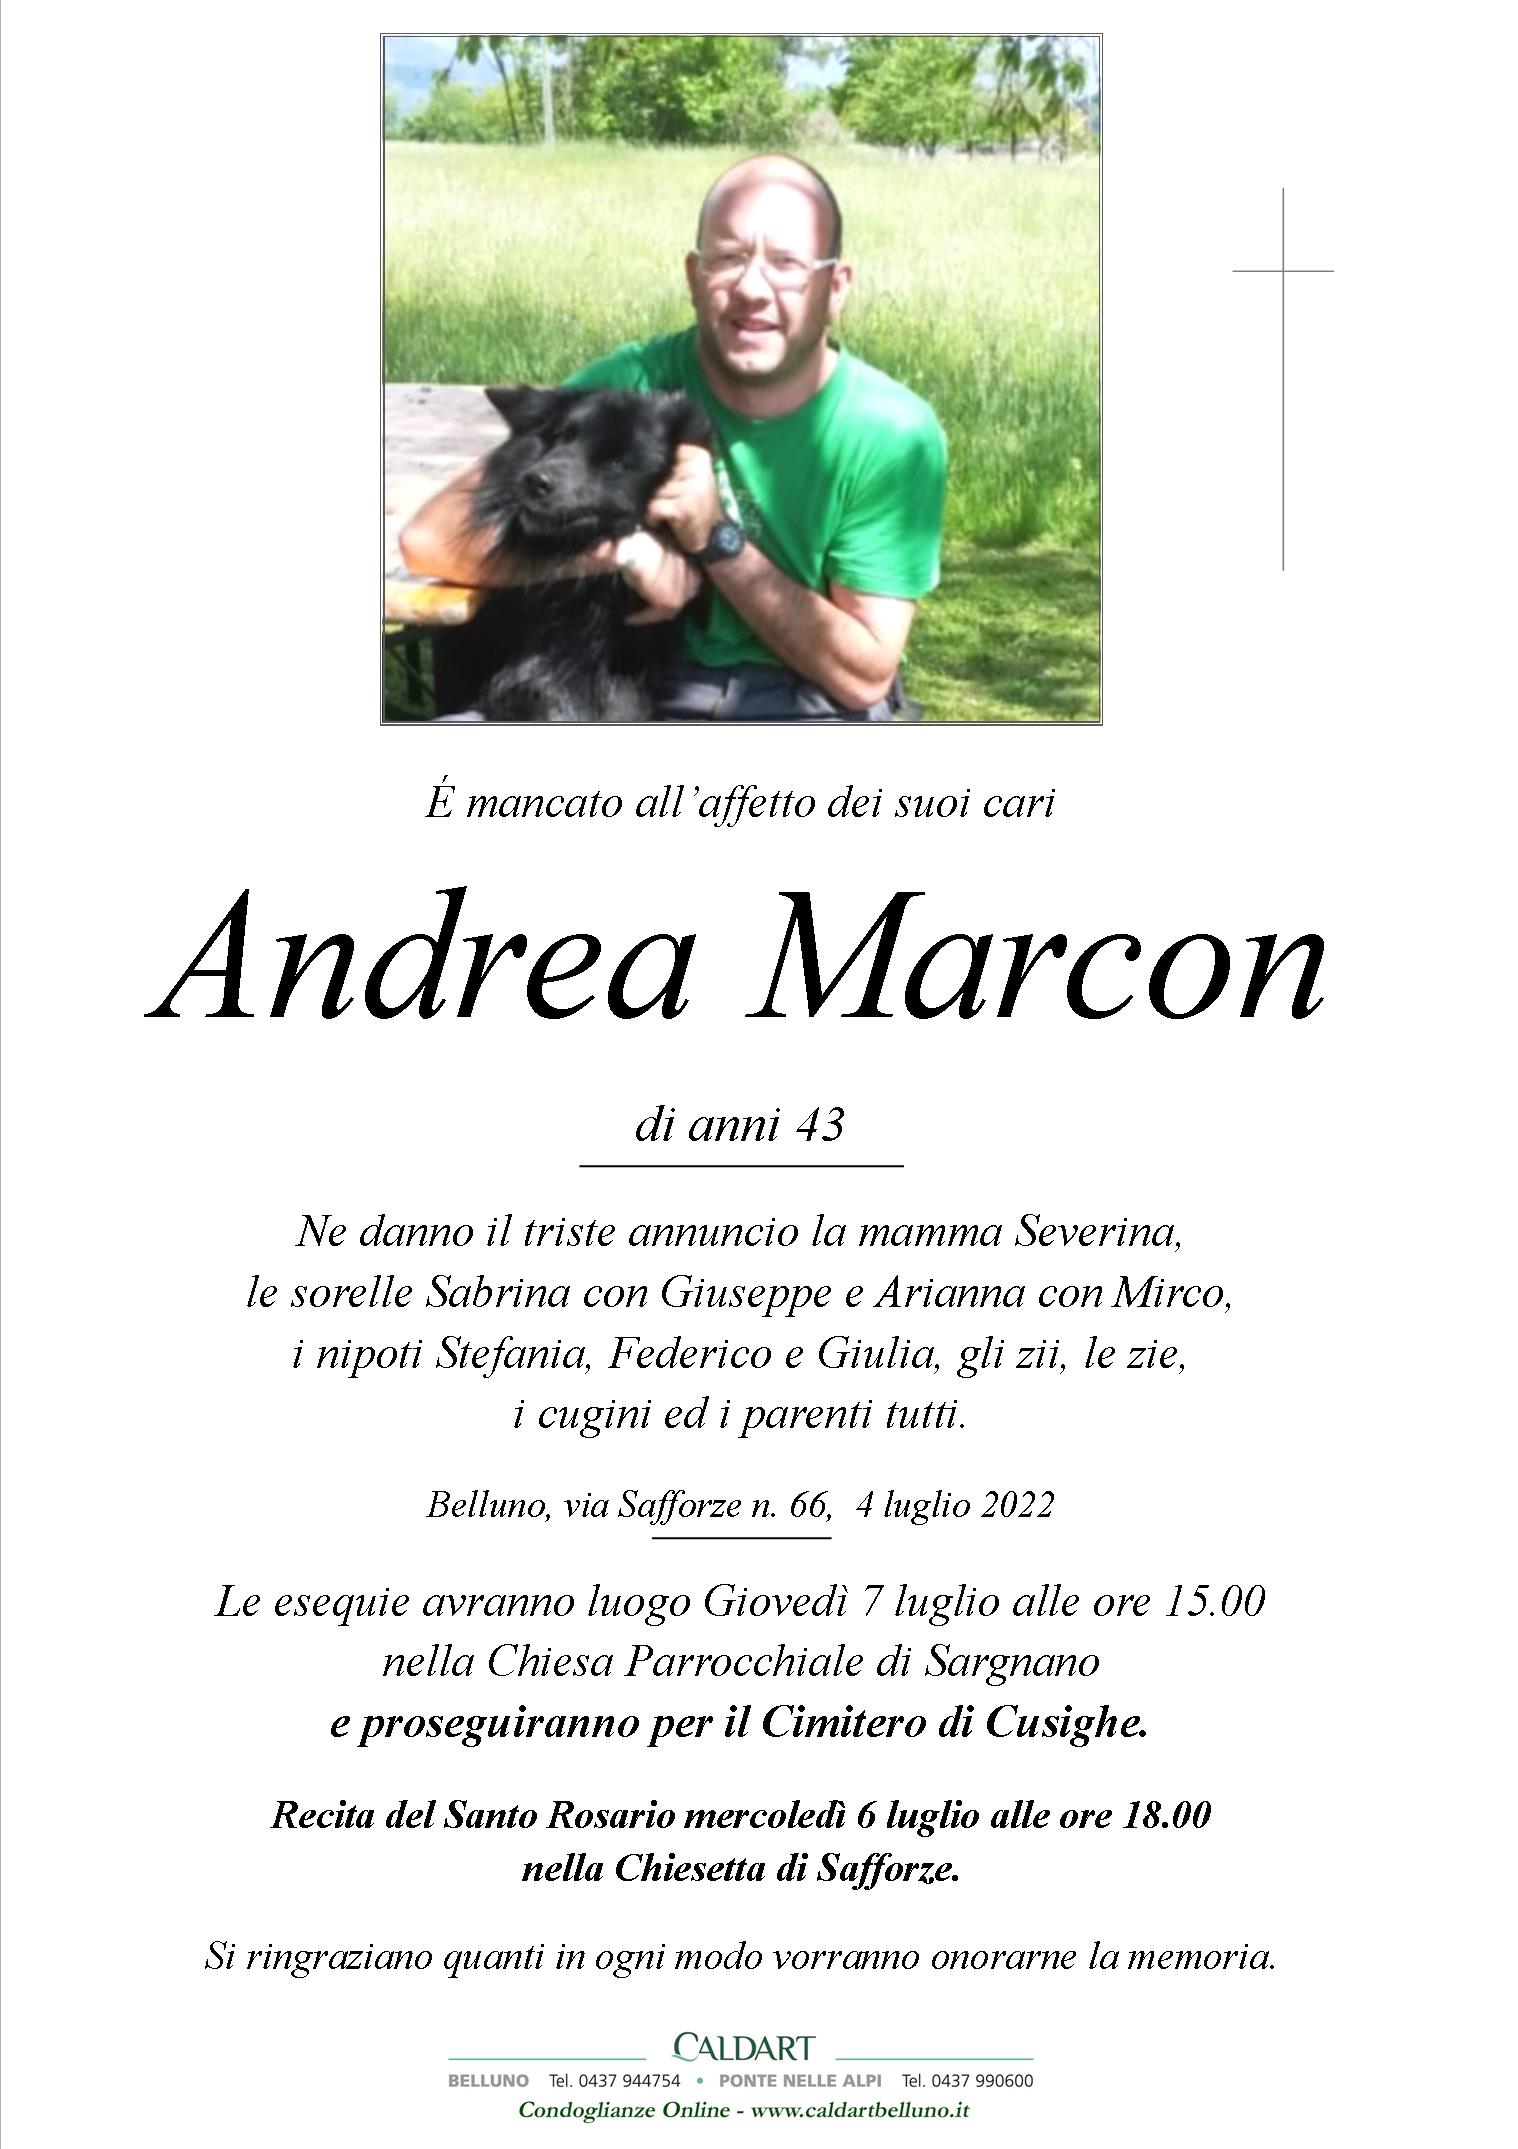 Andrea Marcon